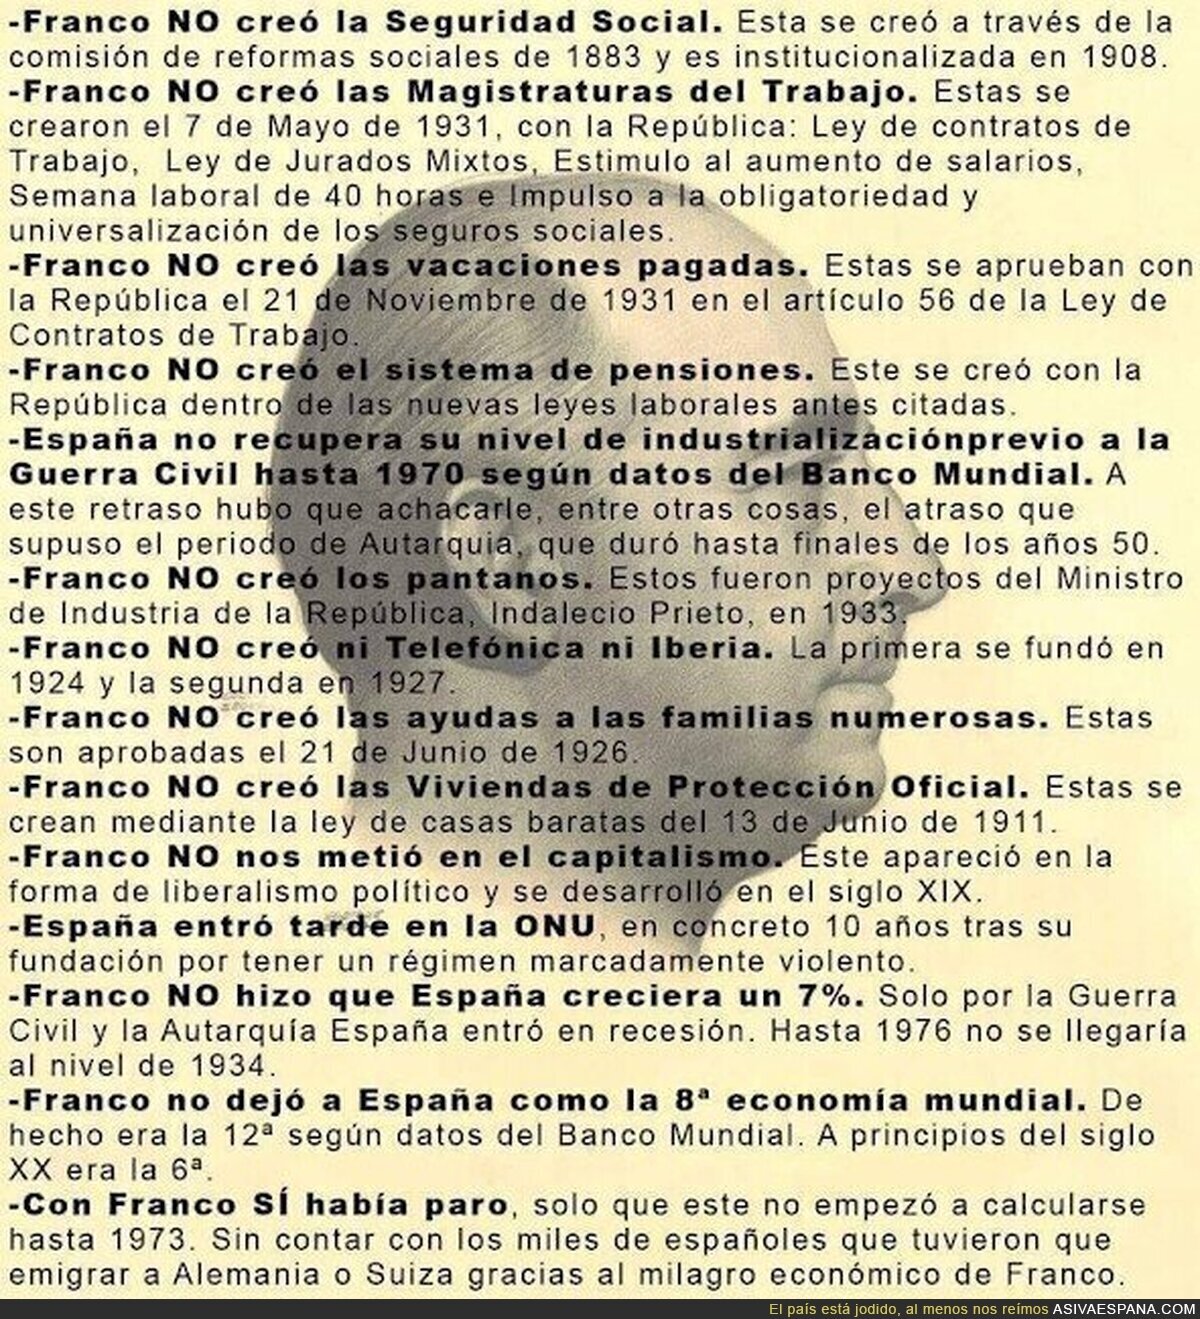 Las mentiras de Franco